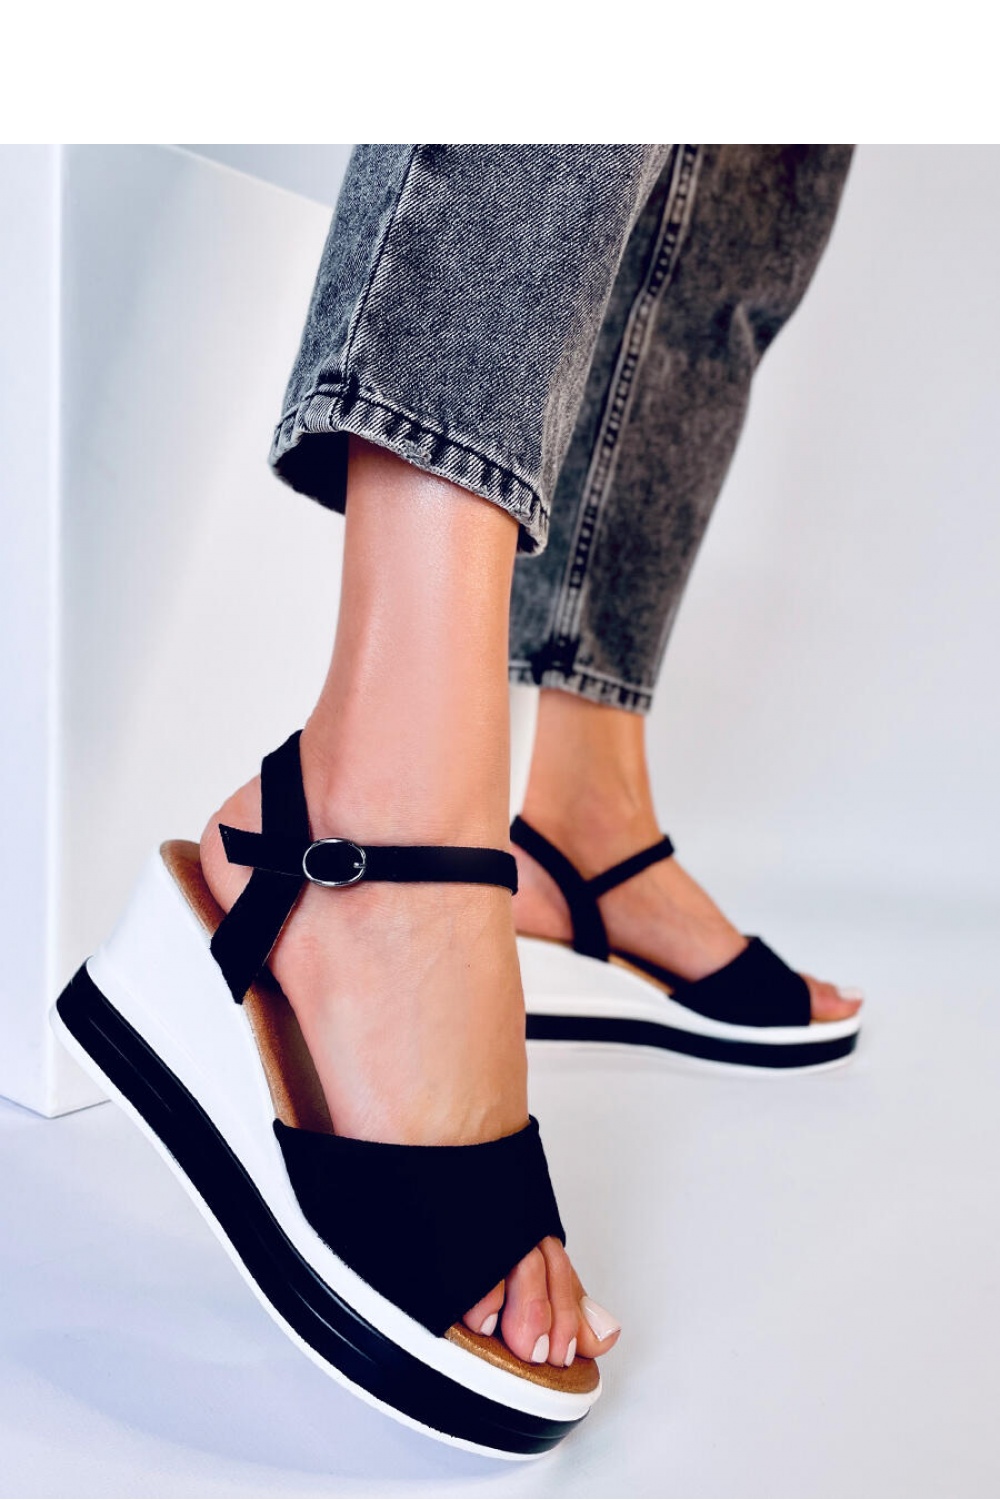 Sandalen mit Absatz model 179407 Inello schwarz Damen